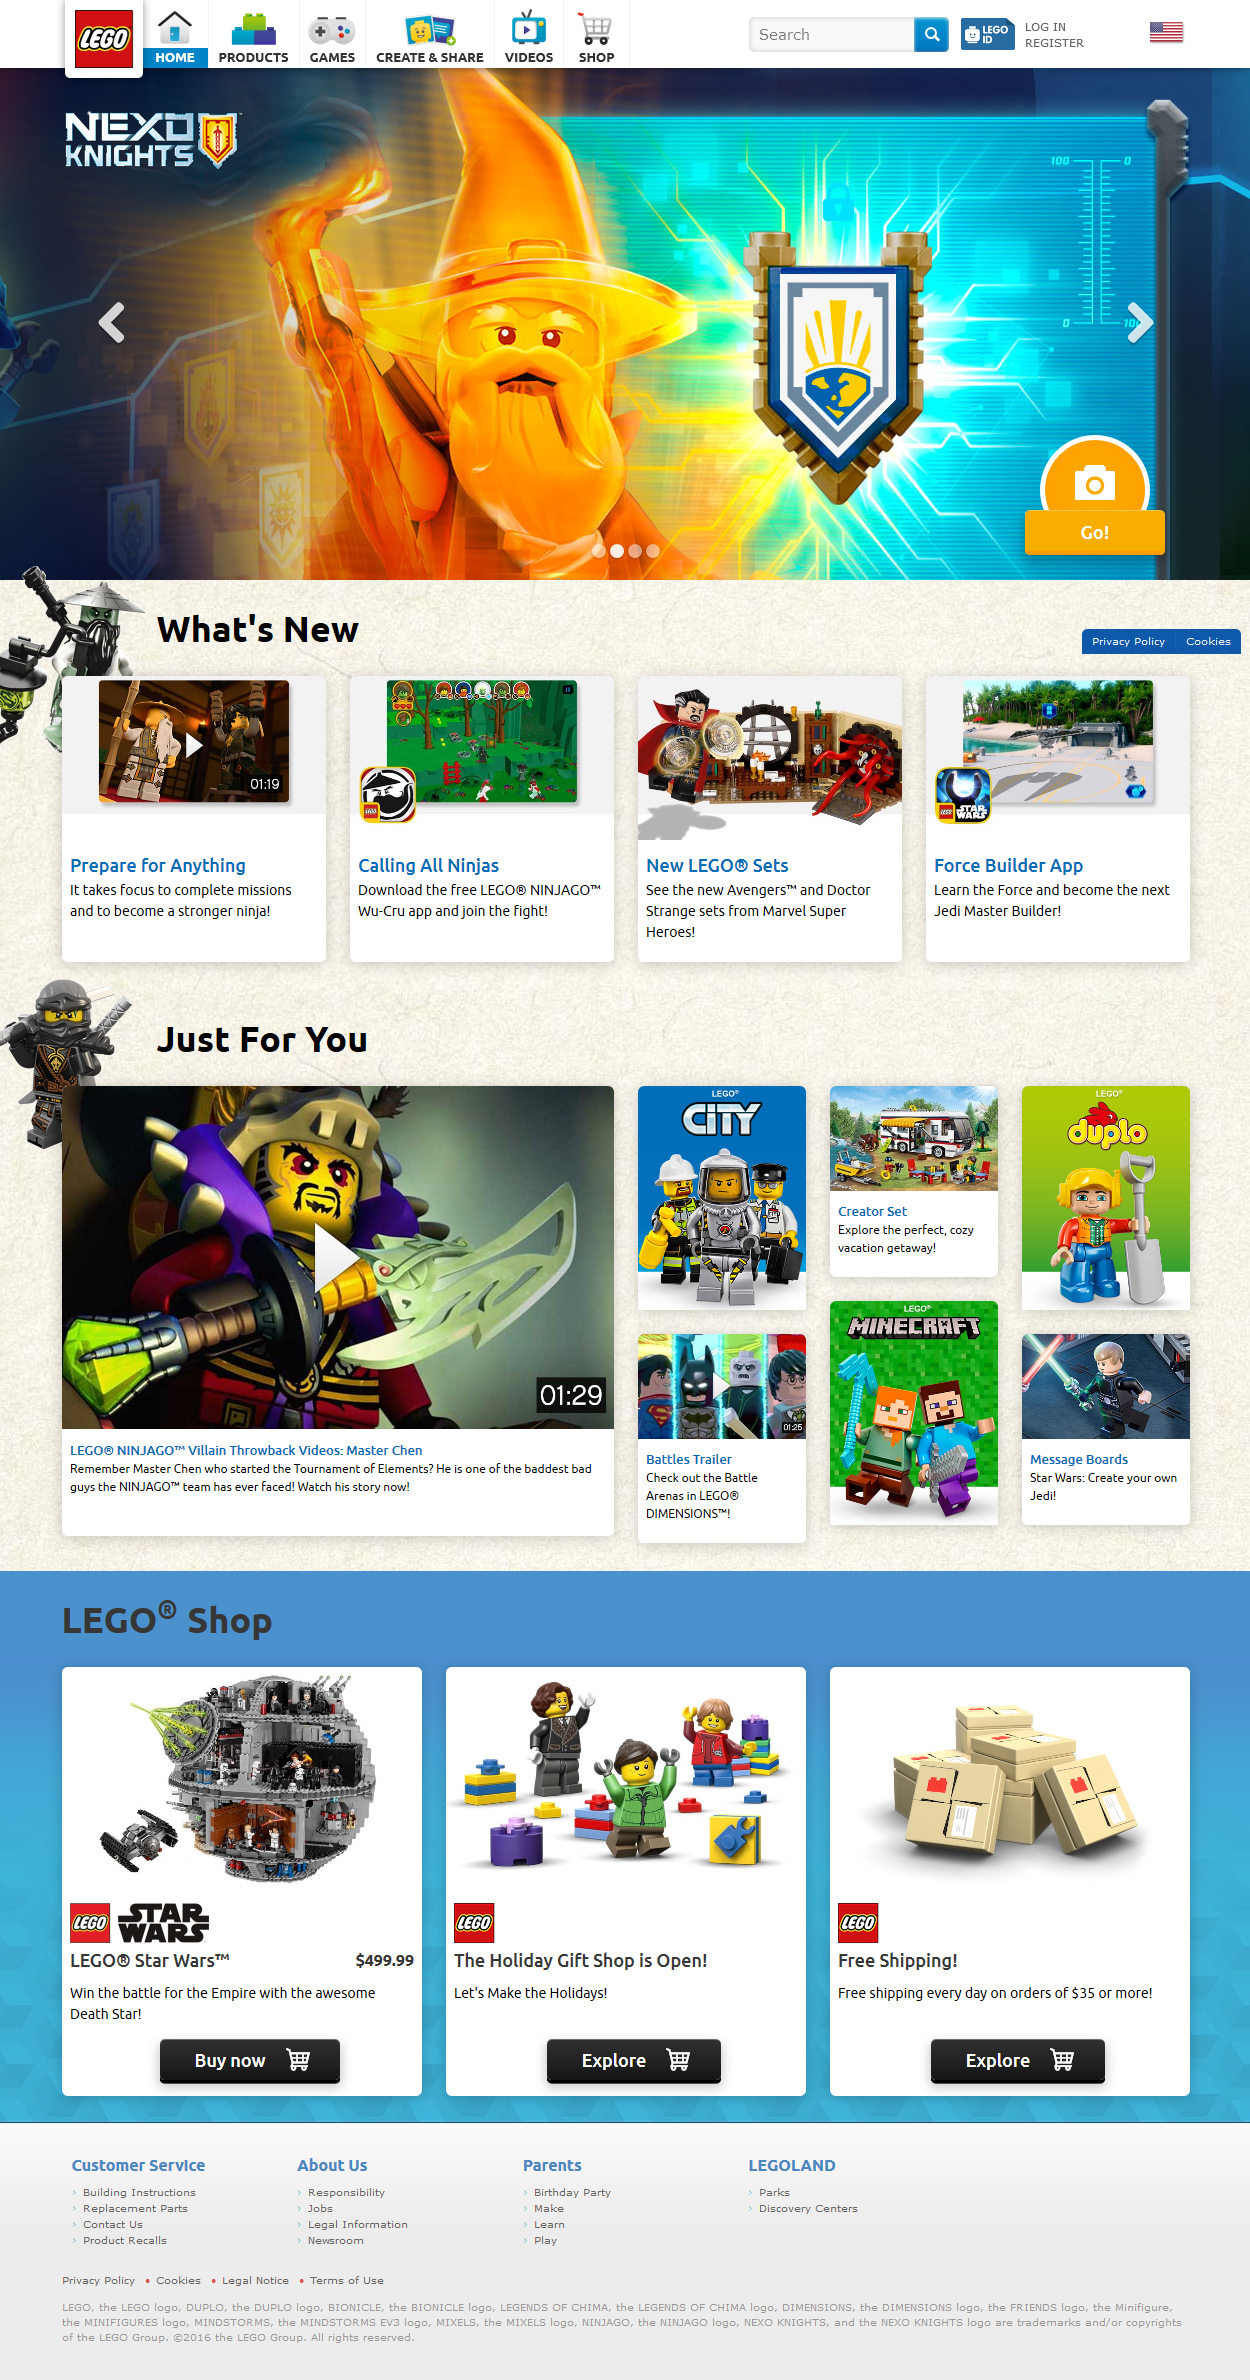 Lego website in 2016